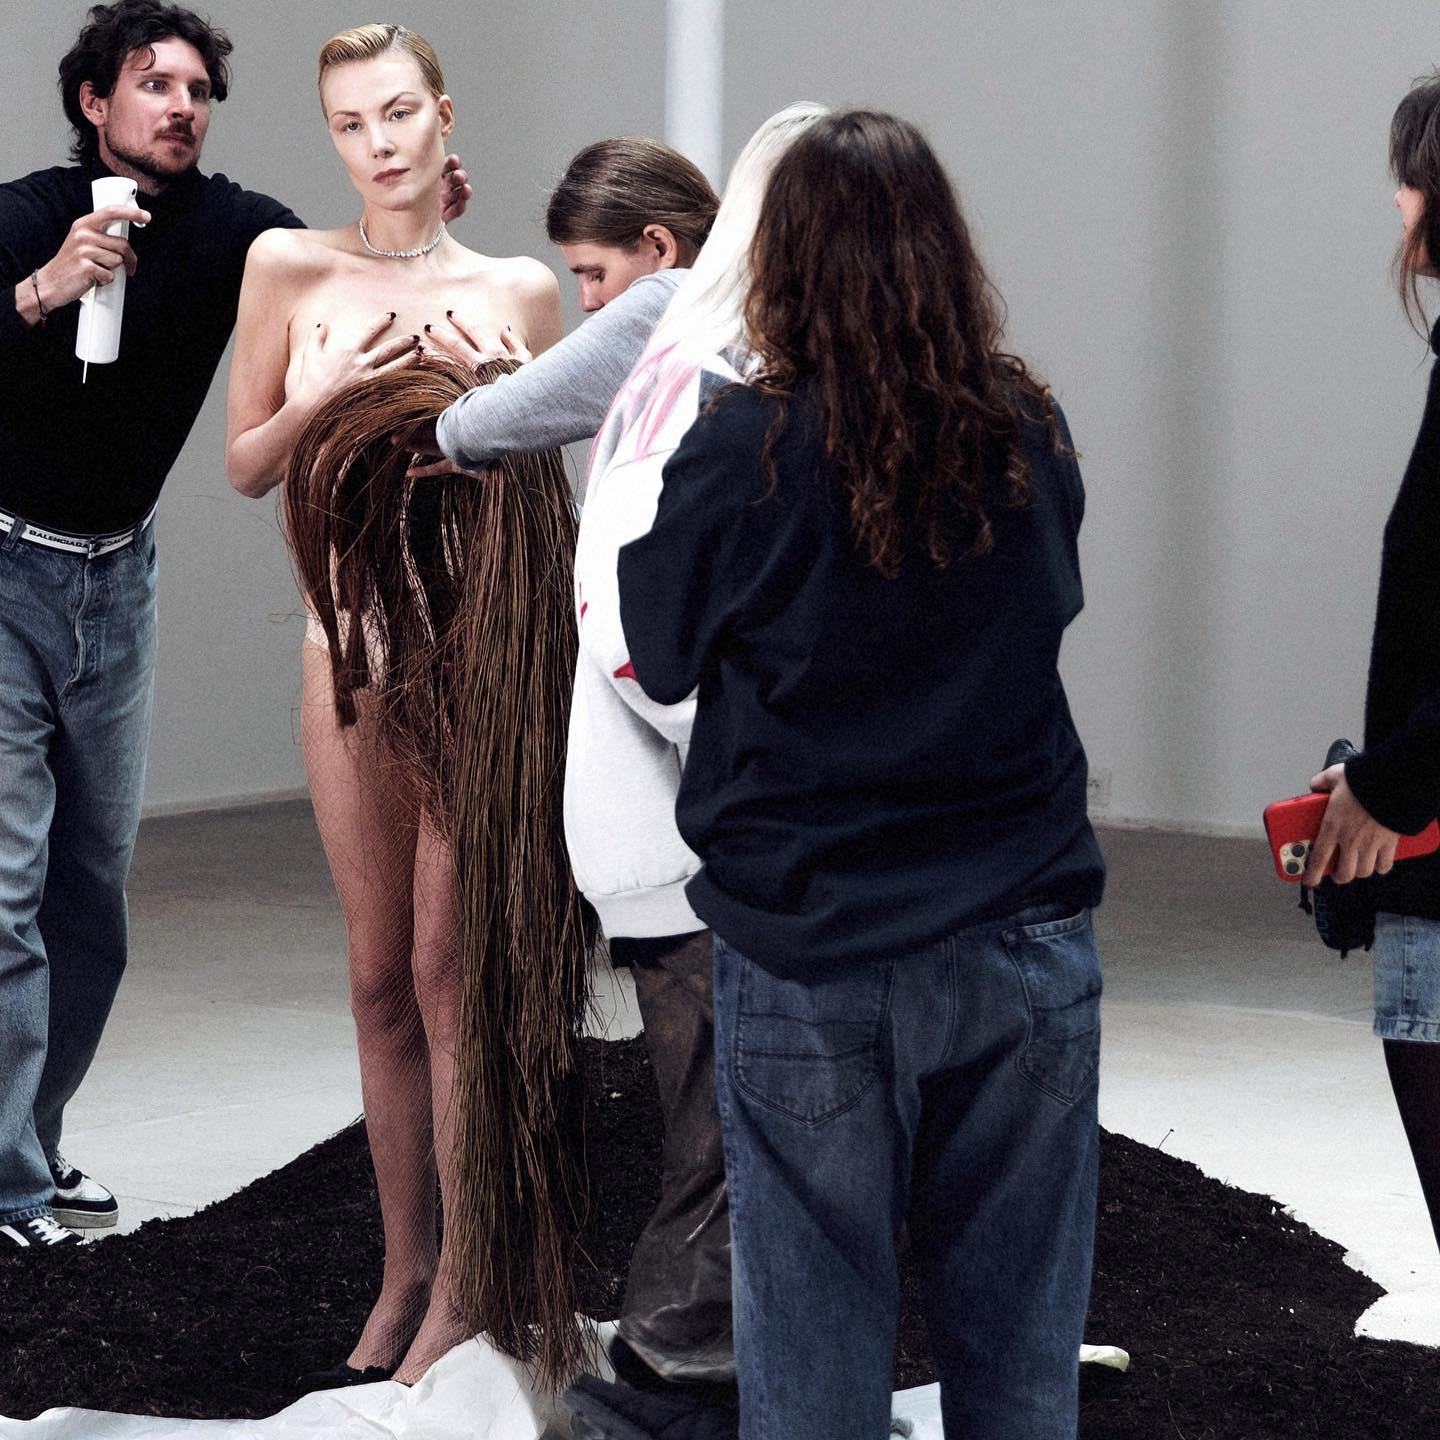 Рената Литвинова с обнаженной грудью украсила обложку модного издания